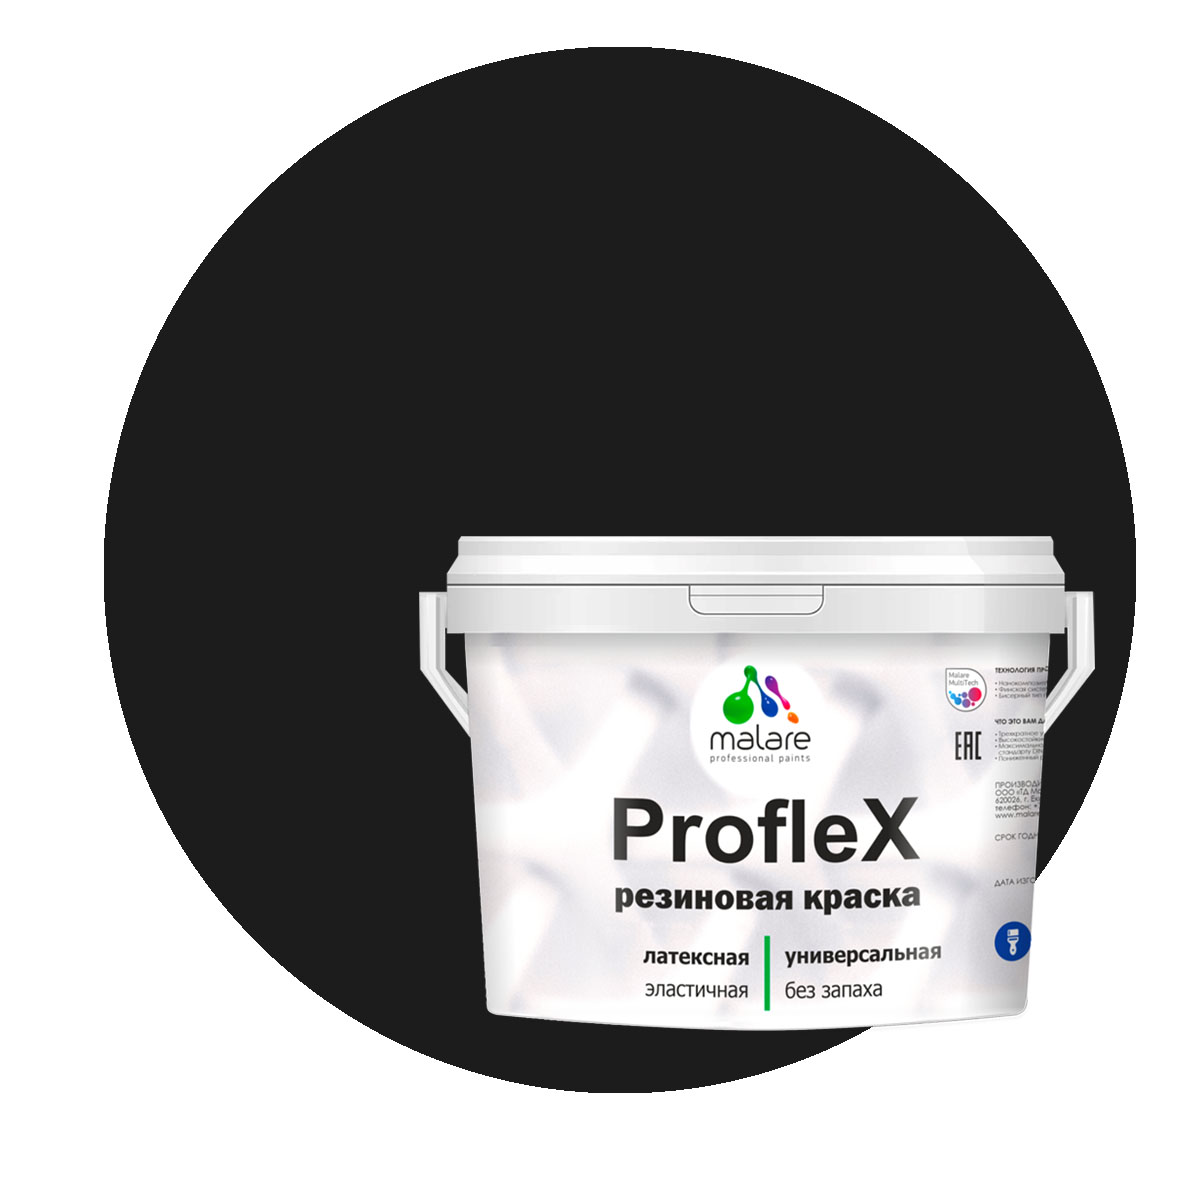 Краска Malare ProfleX для фасадов, интерьера, мебели, черный, 2 кг. щелочной очиститель фасадов зданий plex